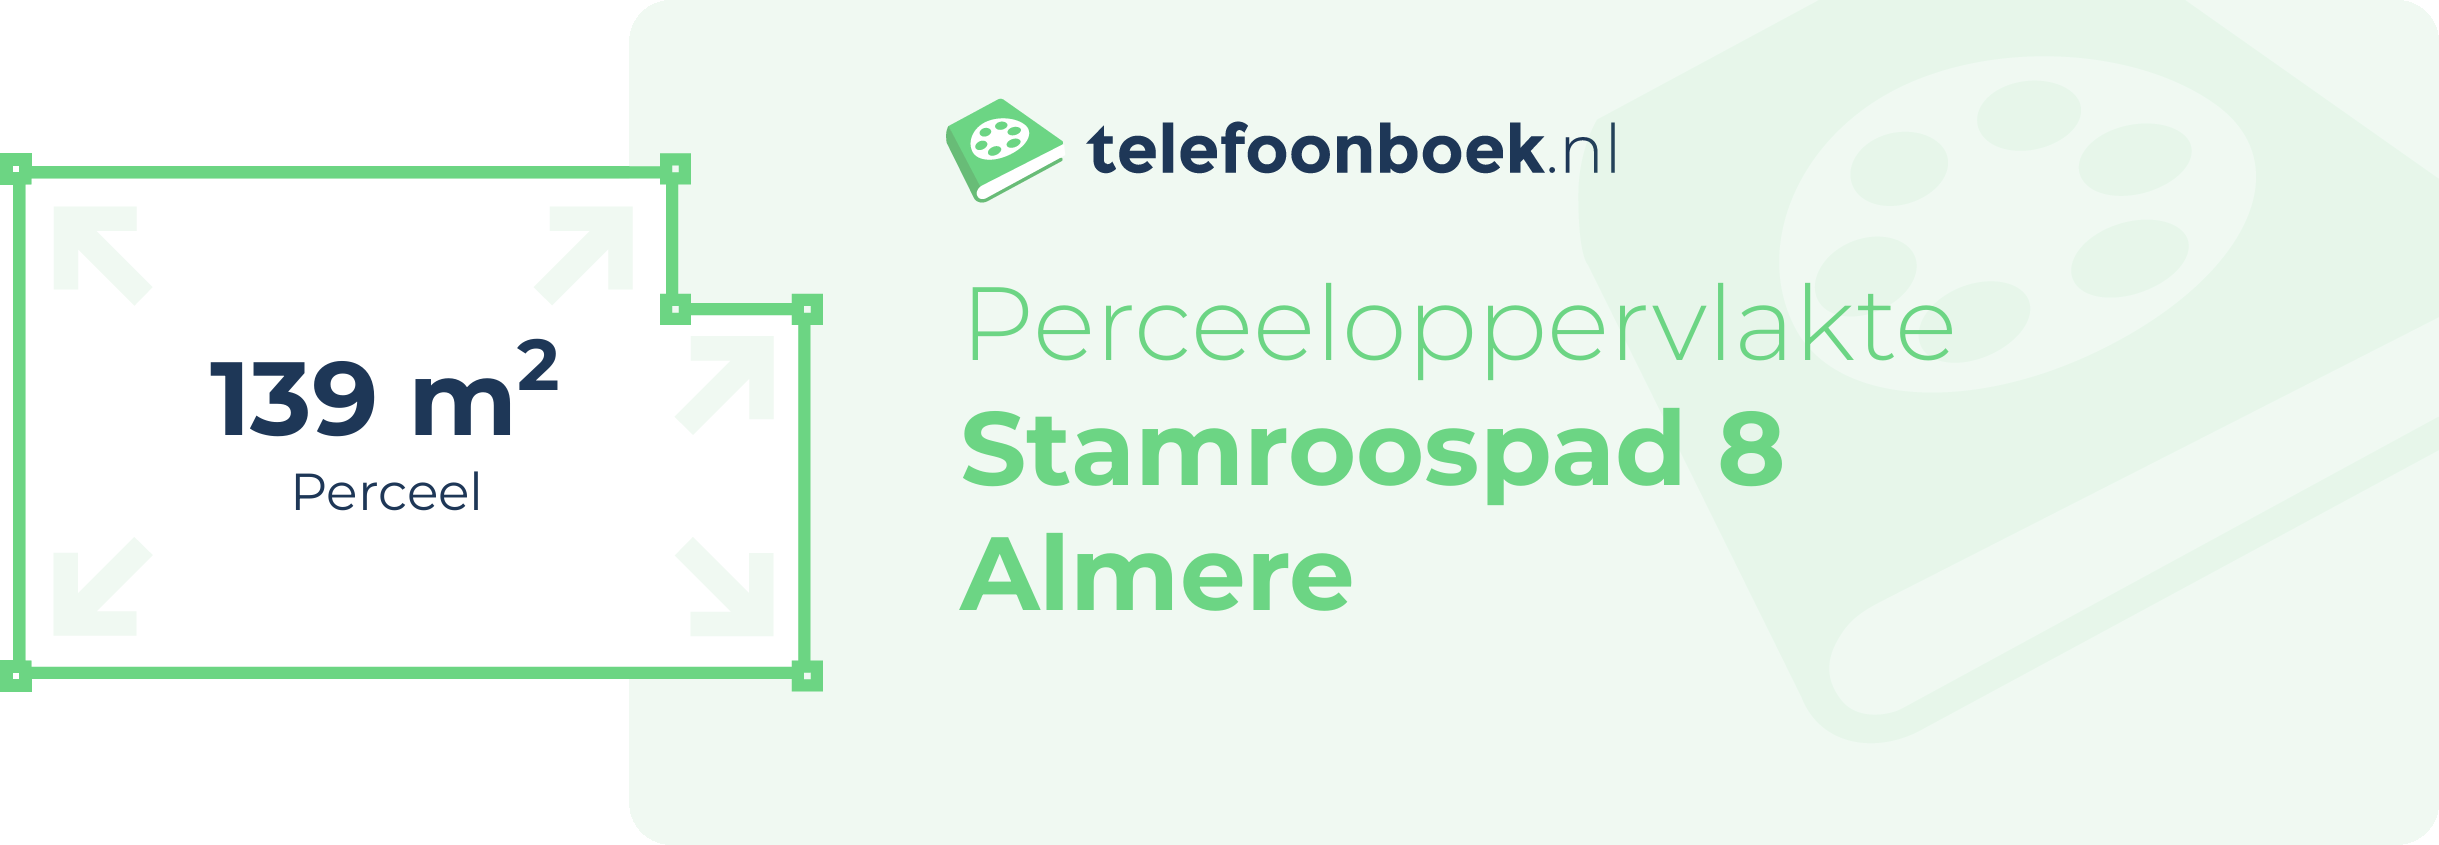 Perceeloppervlakte Stamroospad 8 Almere